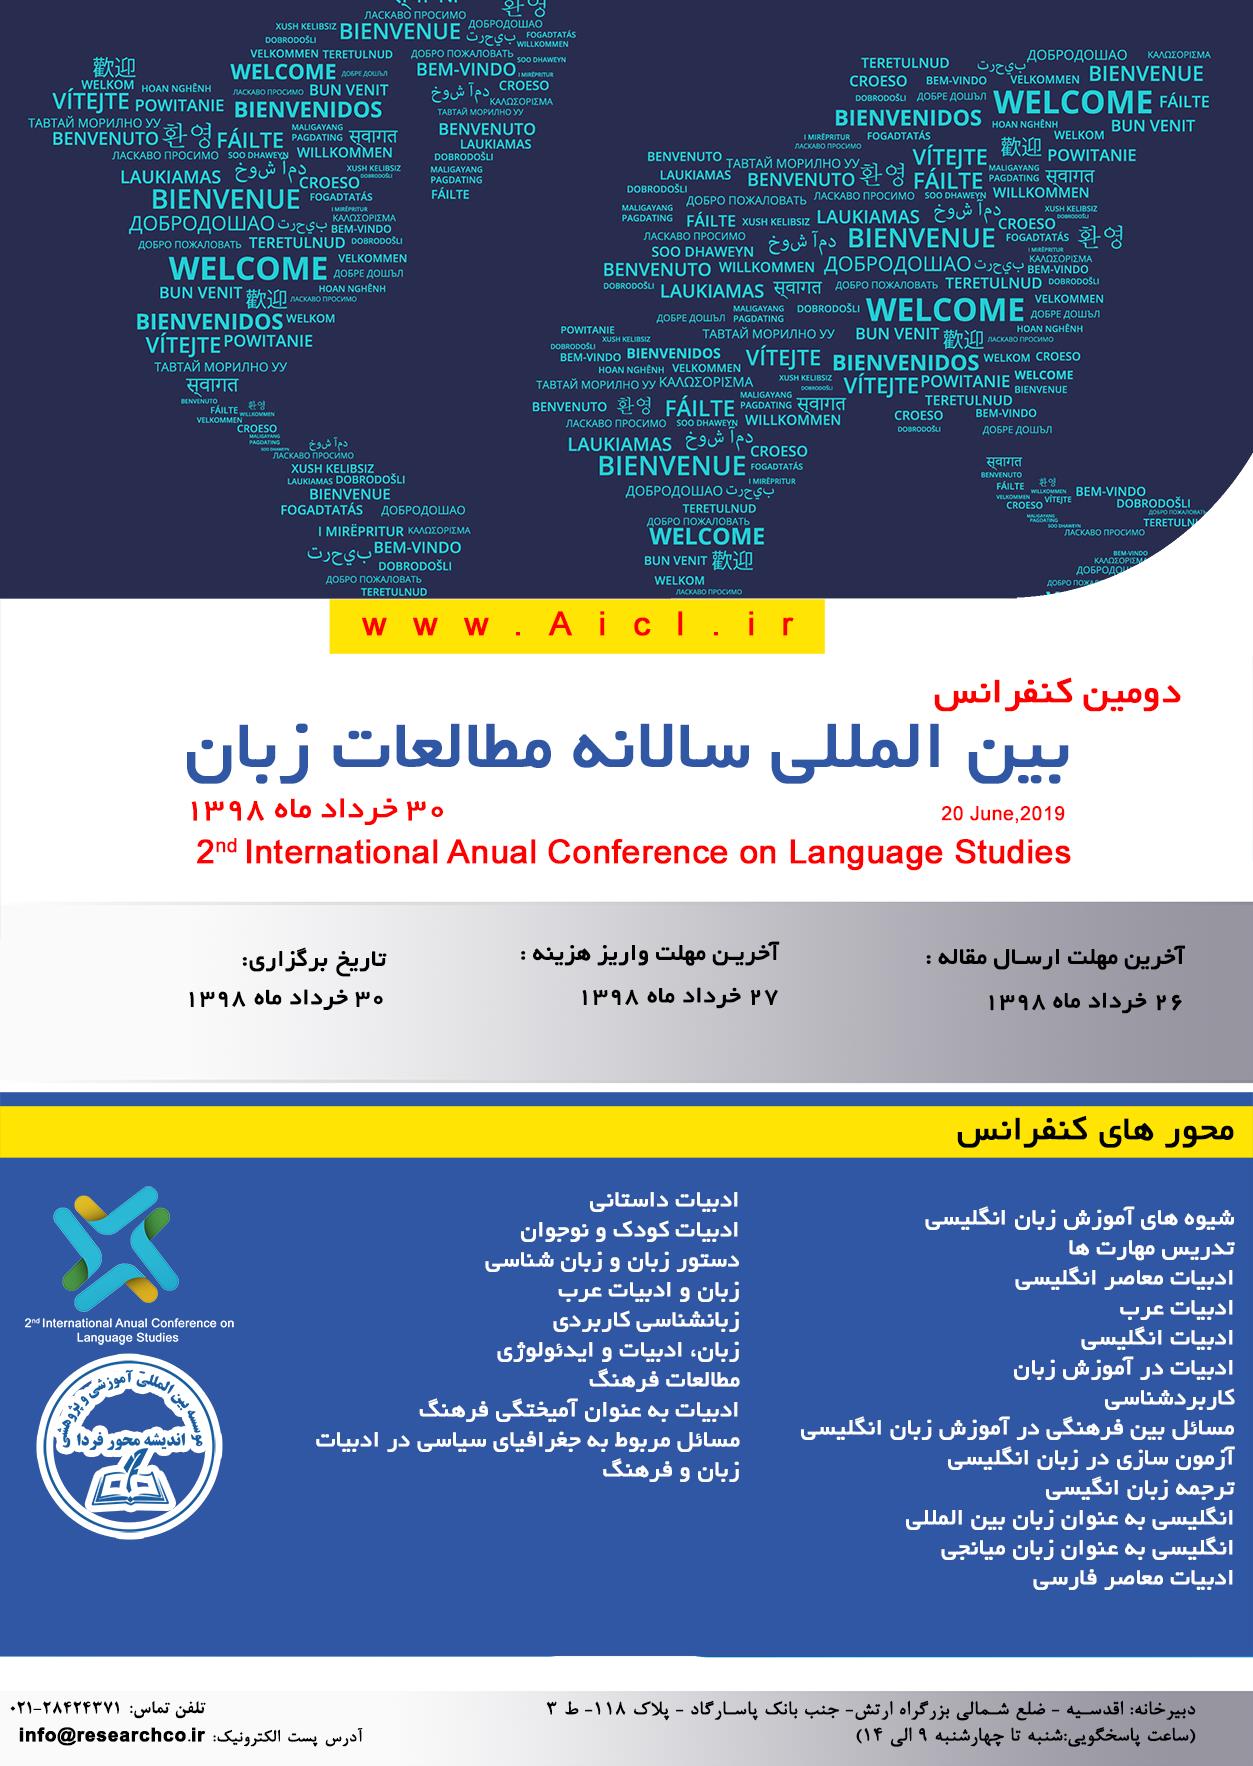 پوستر دومین کنفرانس بین المللی سالانه مطالعات زبان